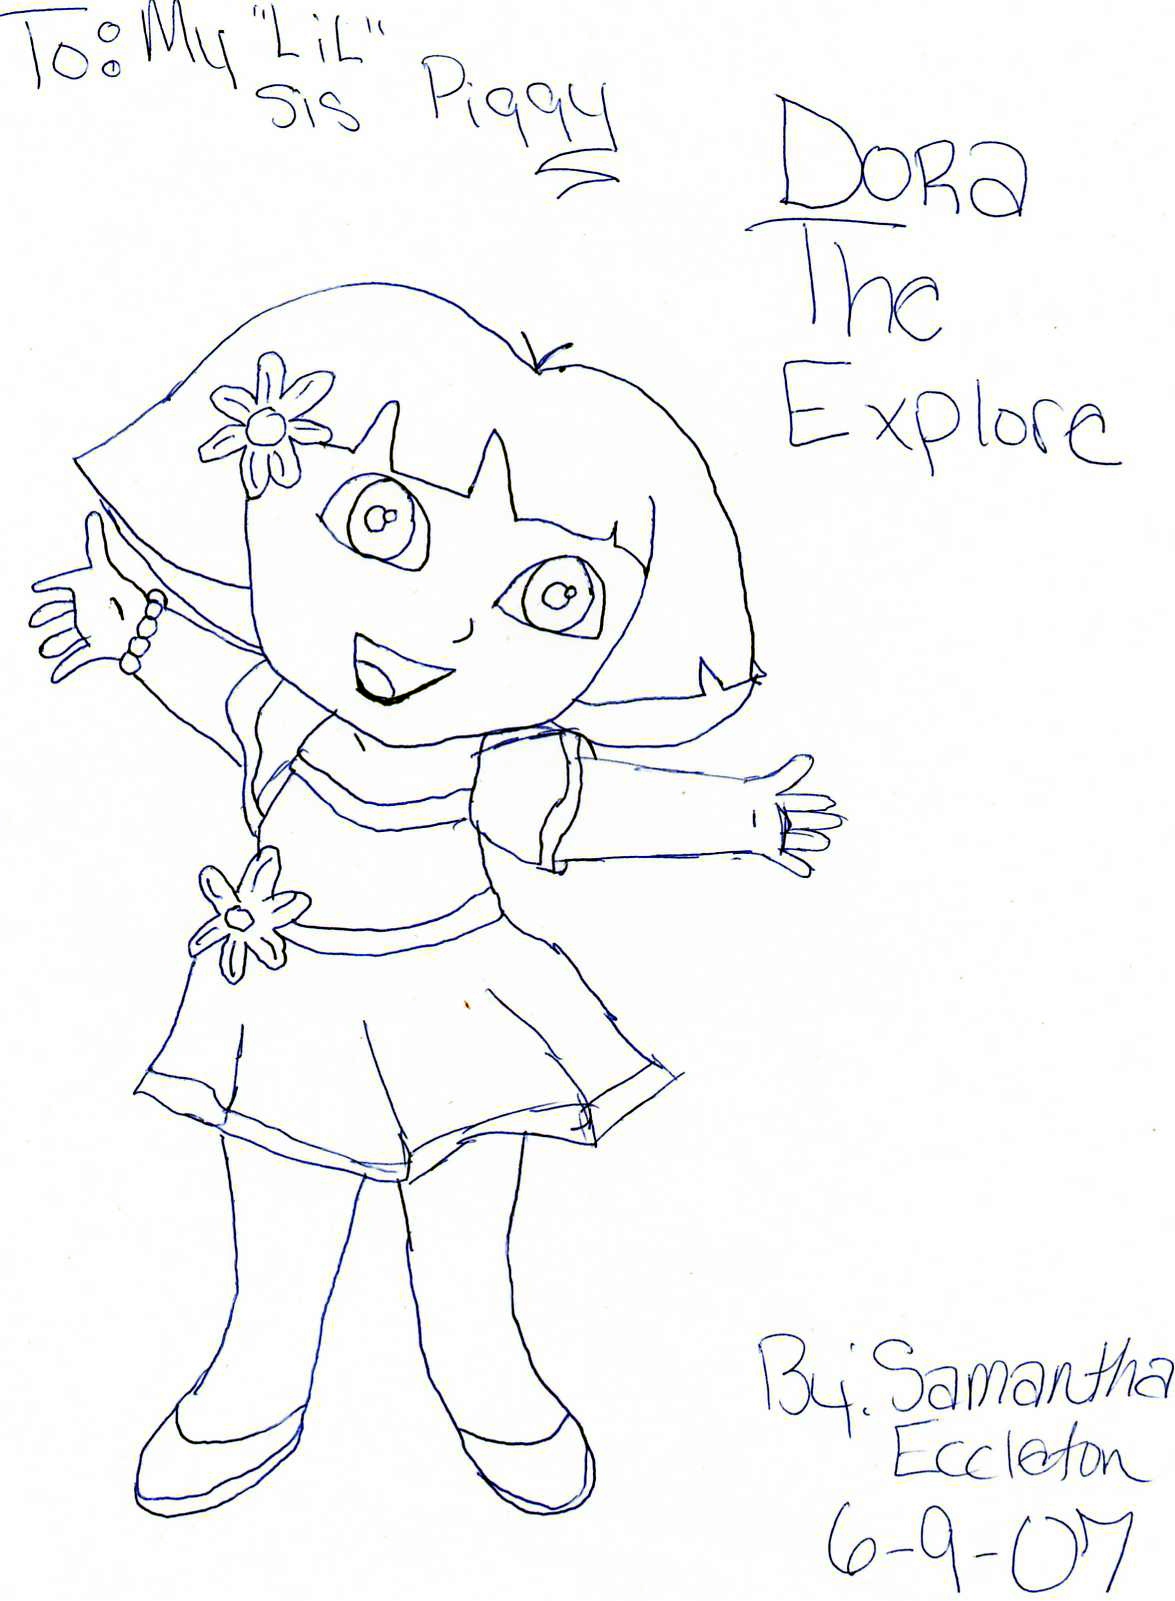 Dora The Explorer by PrincessOfTheTwilight